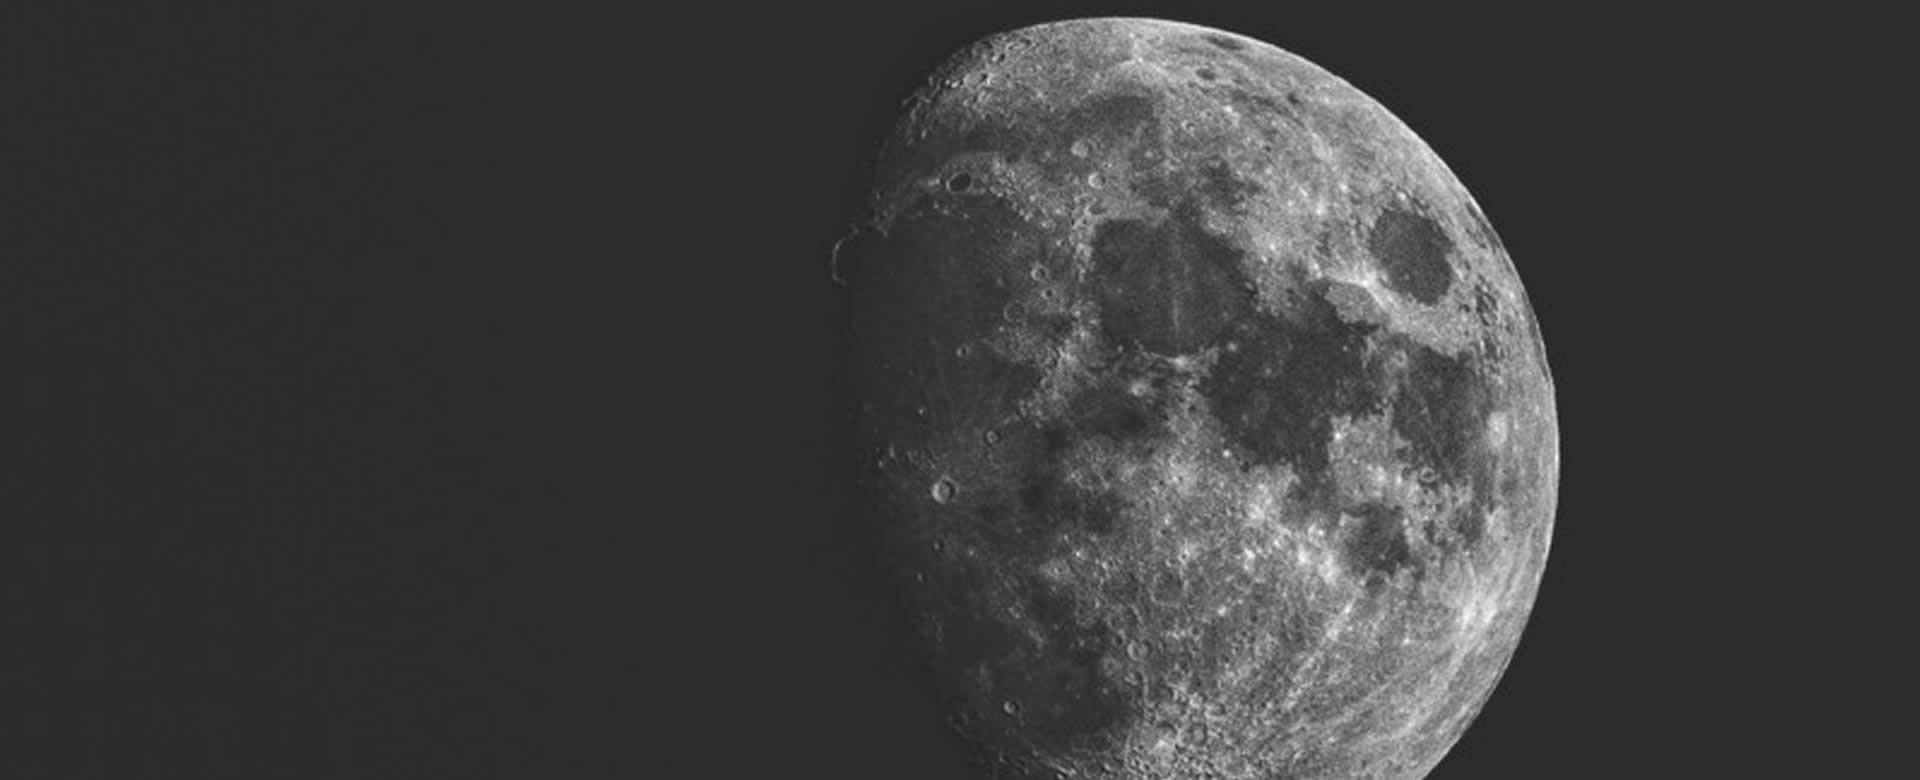 Aeronave espacial india Chandrayaan-2 llega con éxito a la órbita lunar